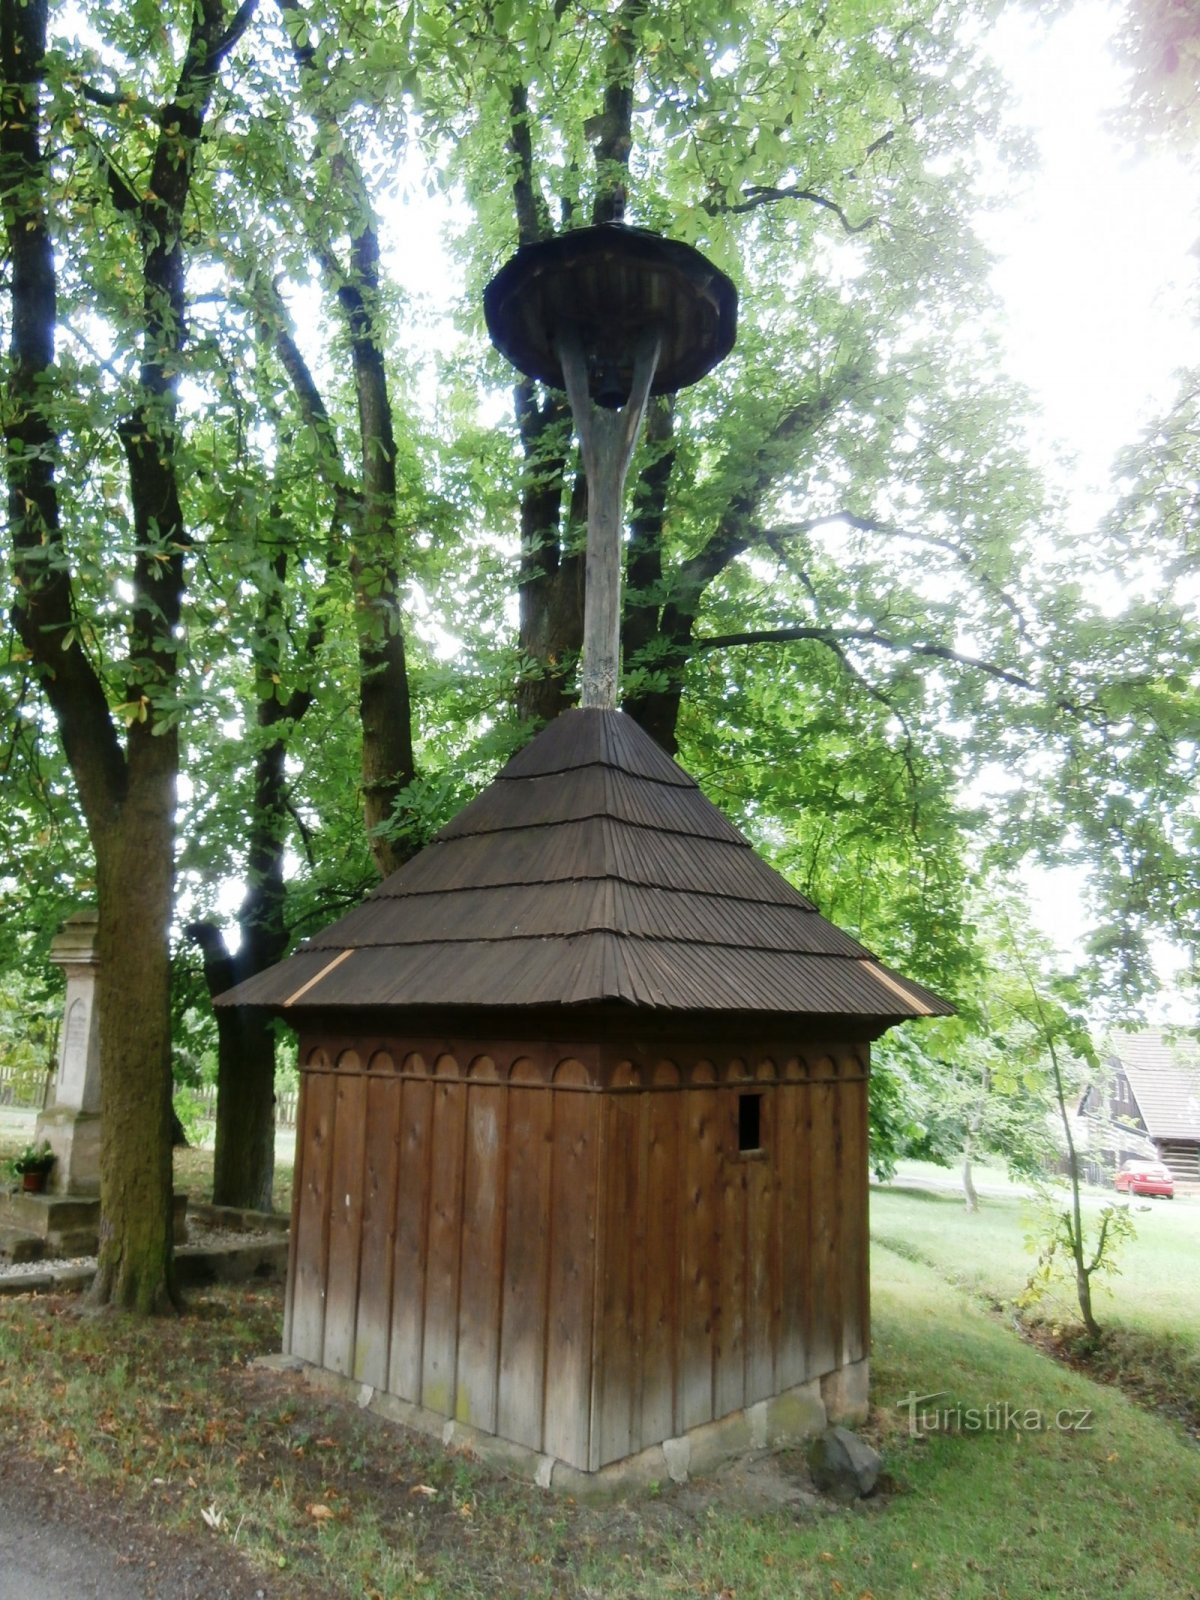 2. Заселение Боснии. часть села Мужский - деревянная колокольня начала 19 века